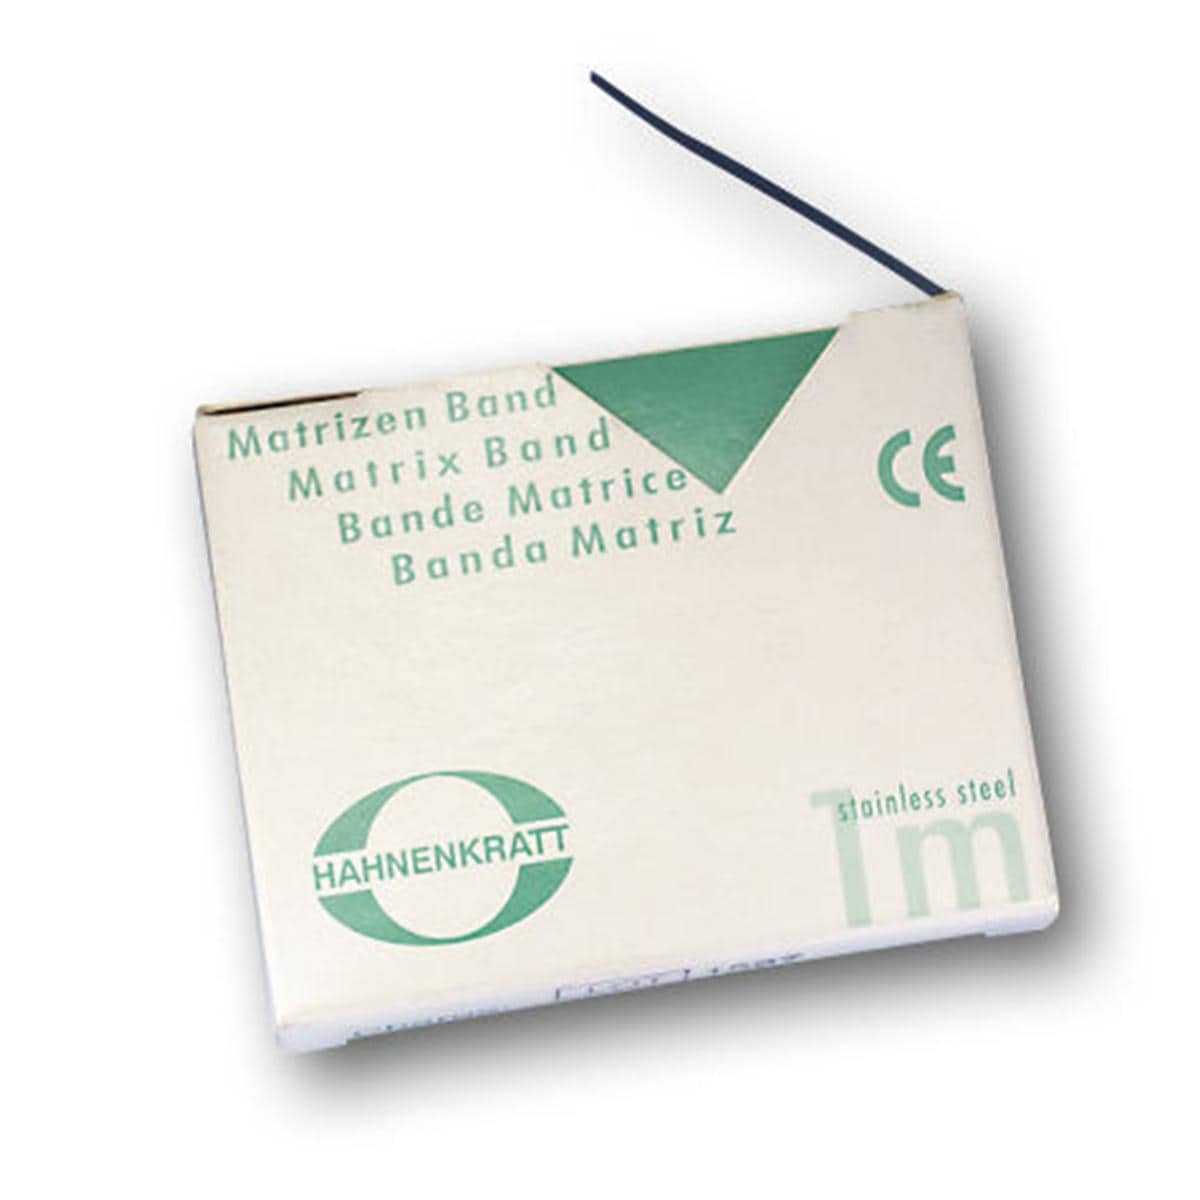 Matrizenband Hahnenkratt - Rolle 1 m - Breite 4 mm, Stärke 0,03 mm